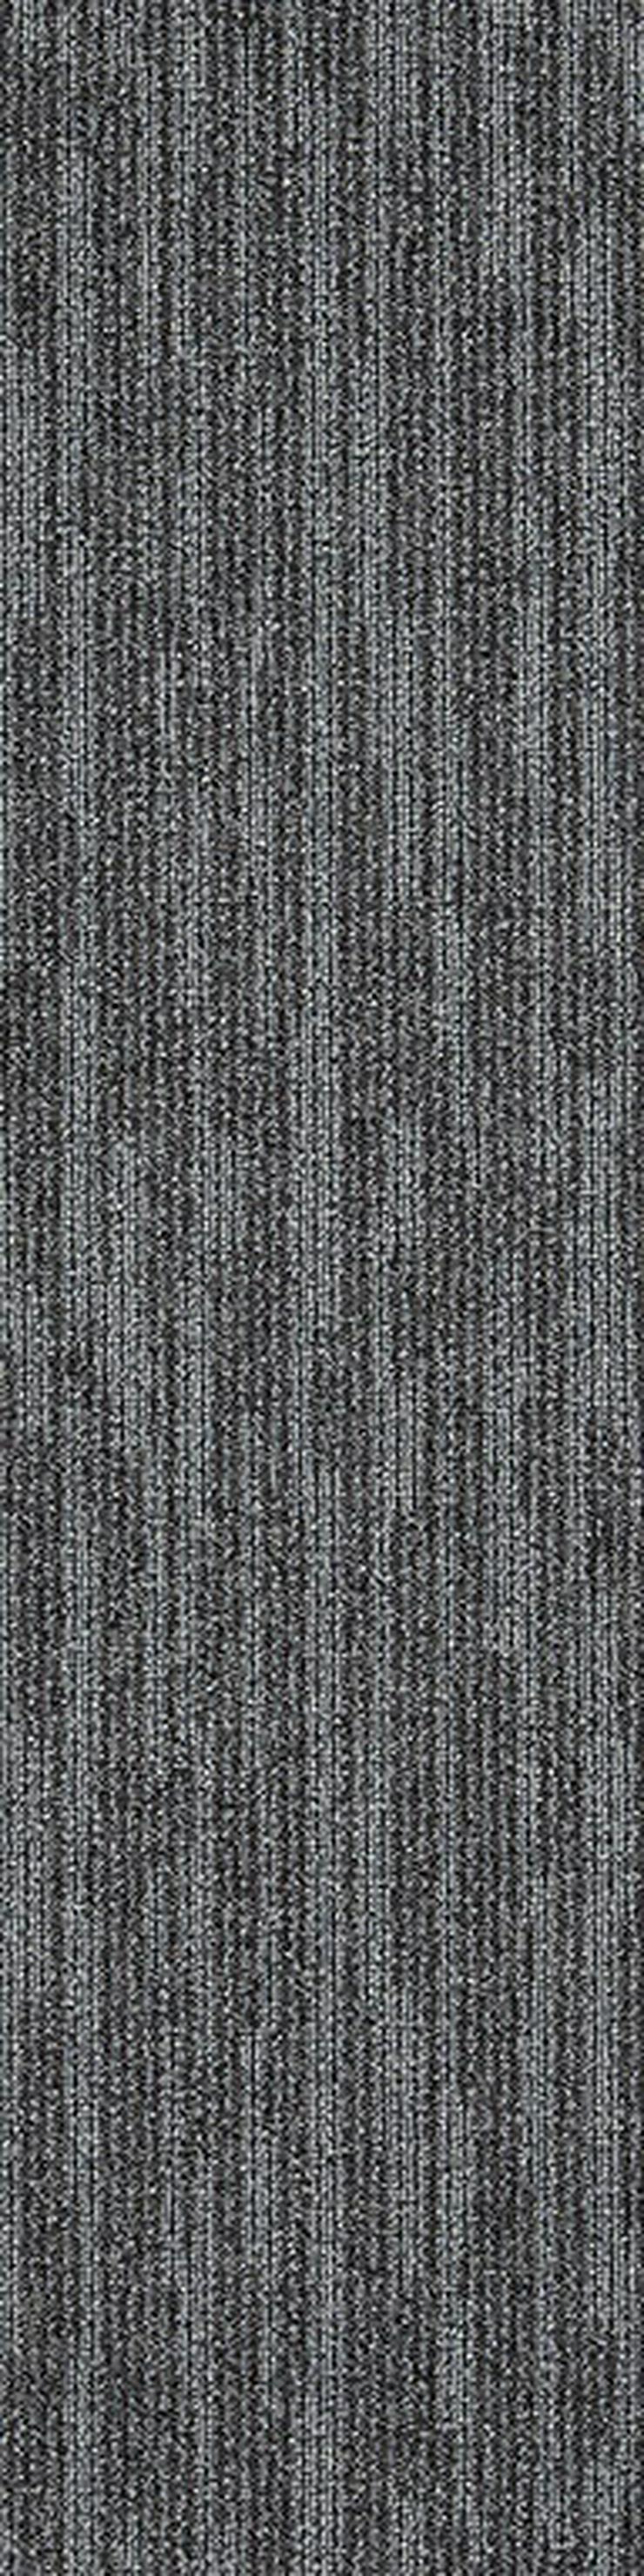 Schöne Works Hype Teppichfliesen von Interface mit Farbakzent - Teppiche - Bild 14